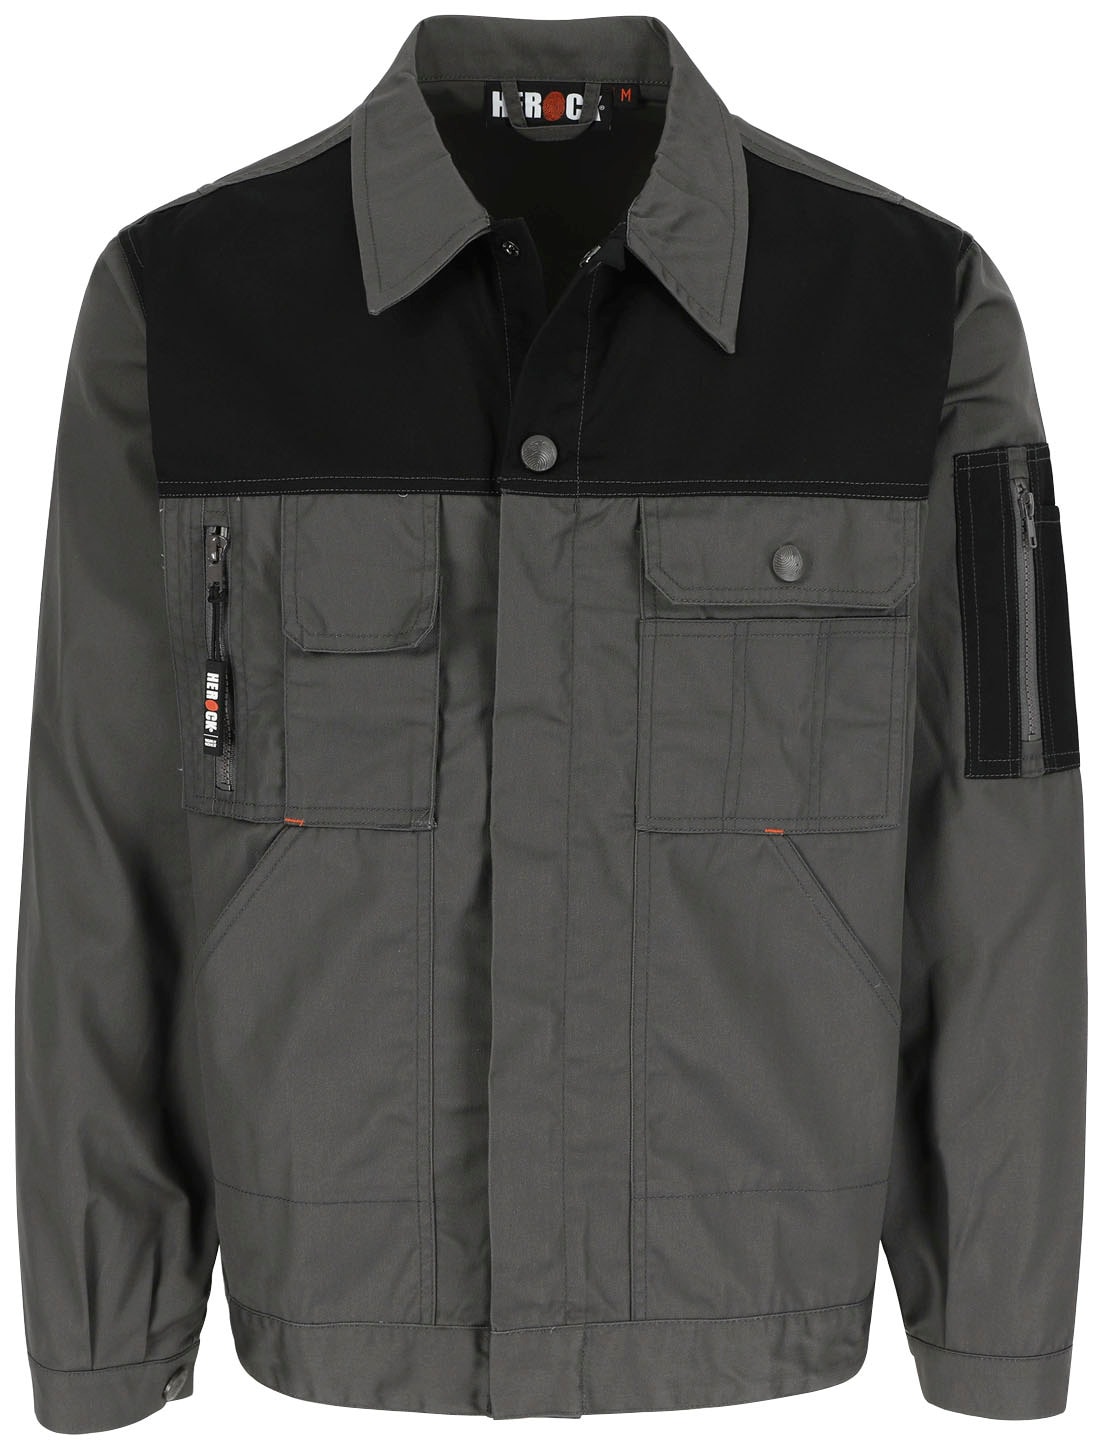 online einstellbare vielen »Aton und Arbeitsjacke Jacke mit Taschen Wasserabweisende Herock bei Jacke«, Bündchen